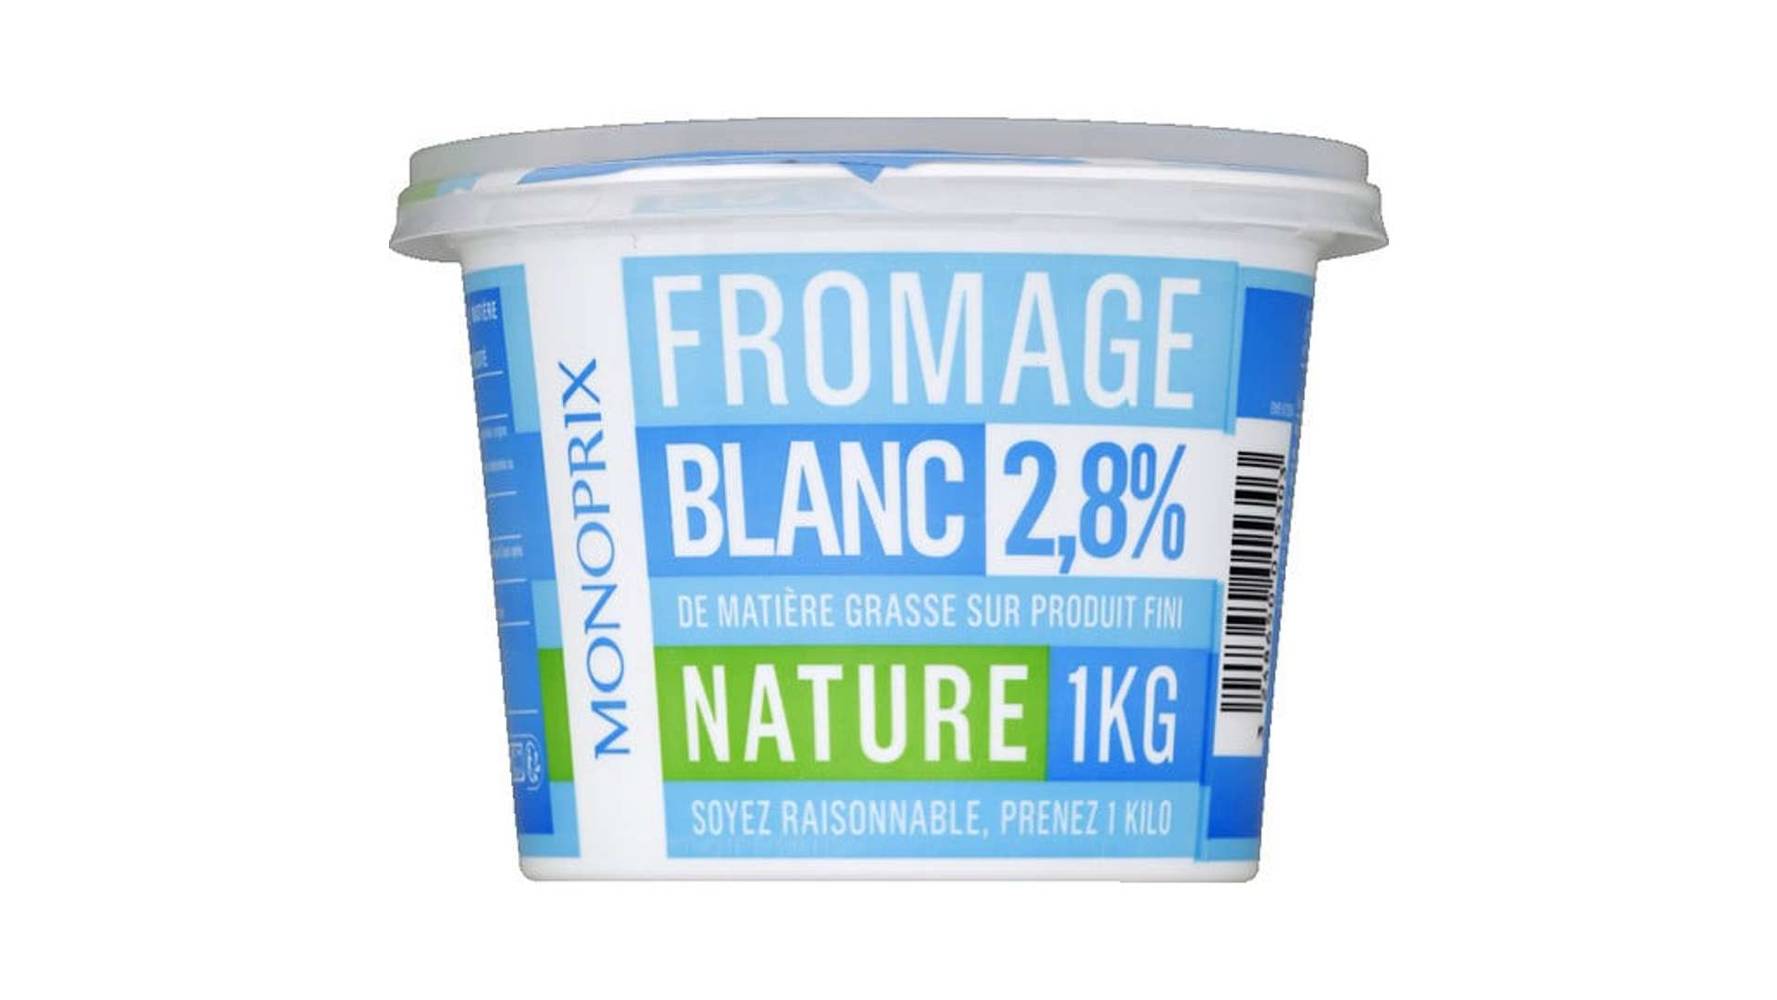 Monoprix Fromage blanc 2,8% MG Le pot de 1 kg